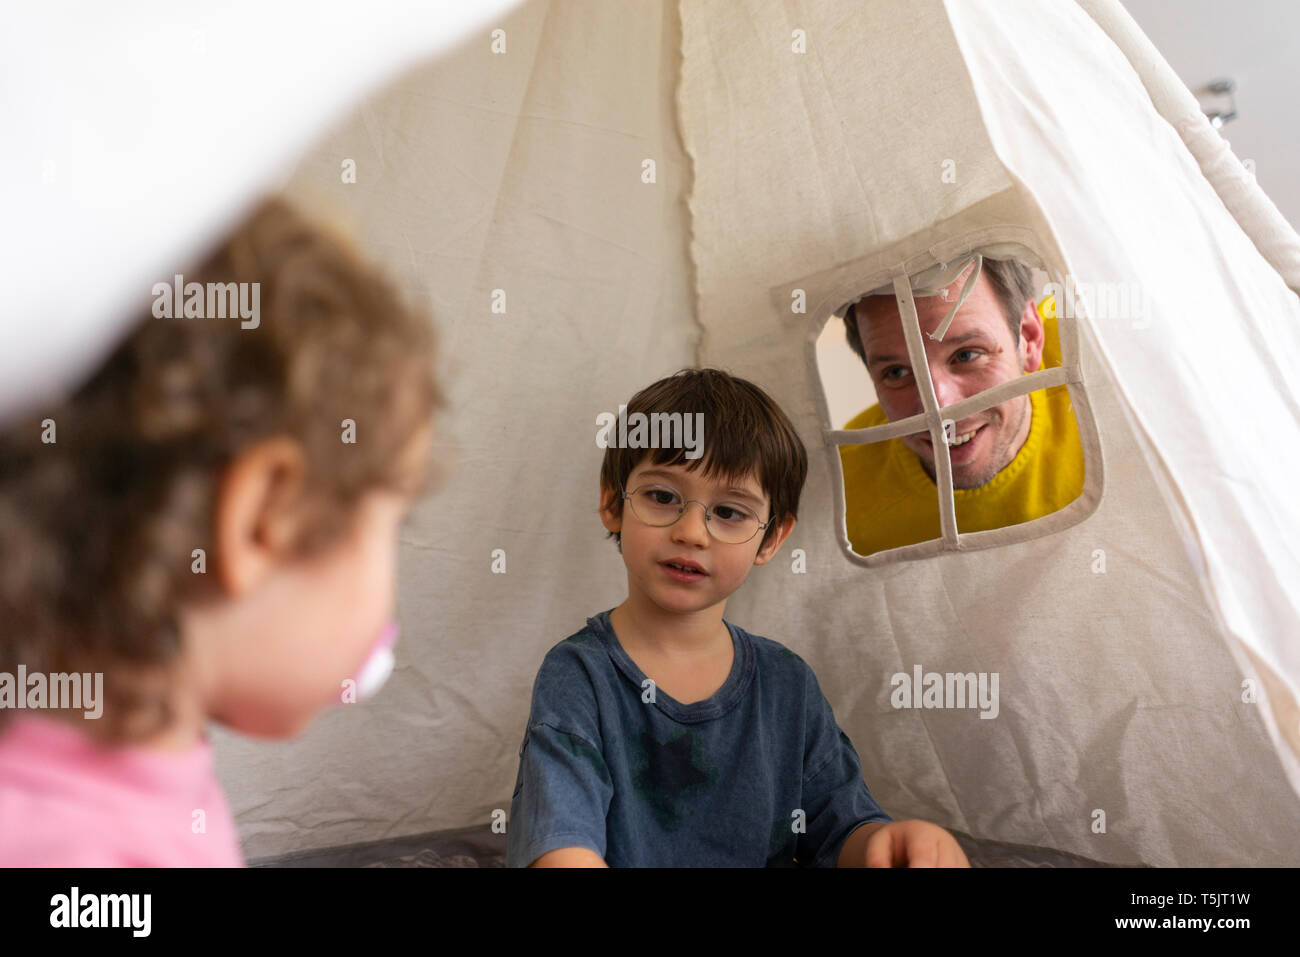 Padre guardando choldren giocando in un gioco tenda Foto Stock